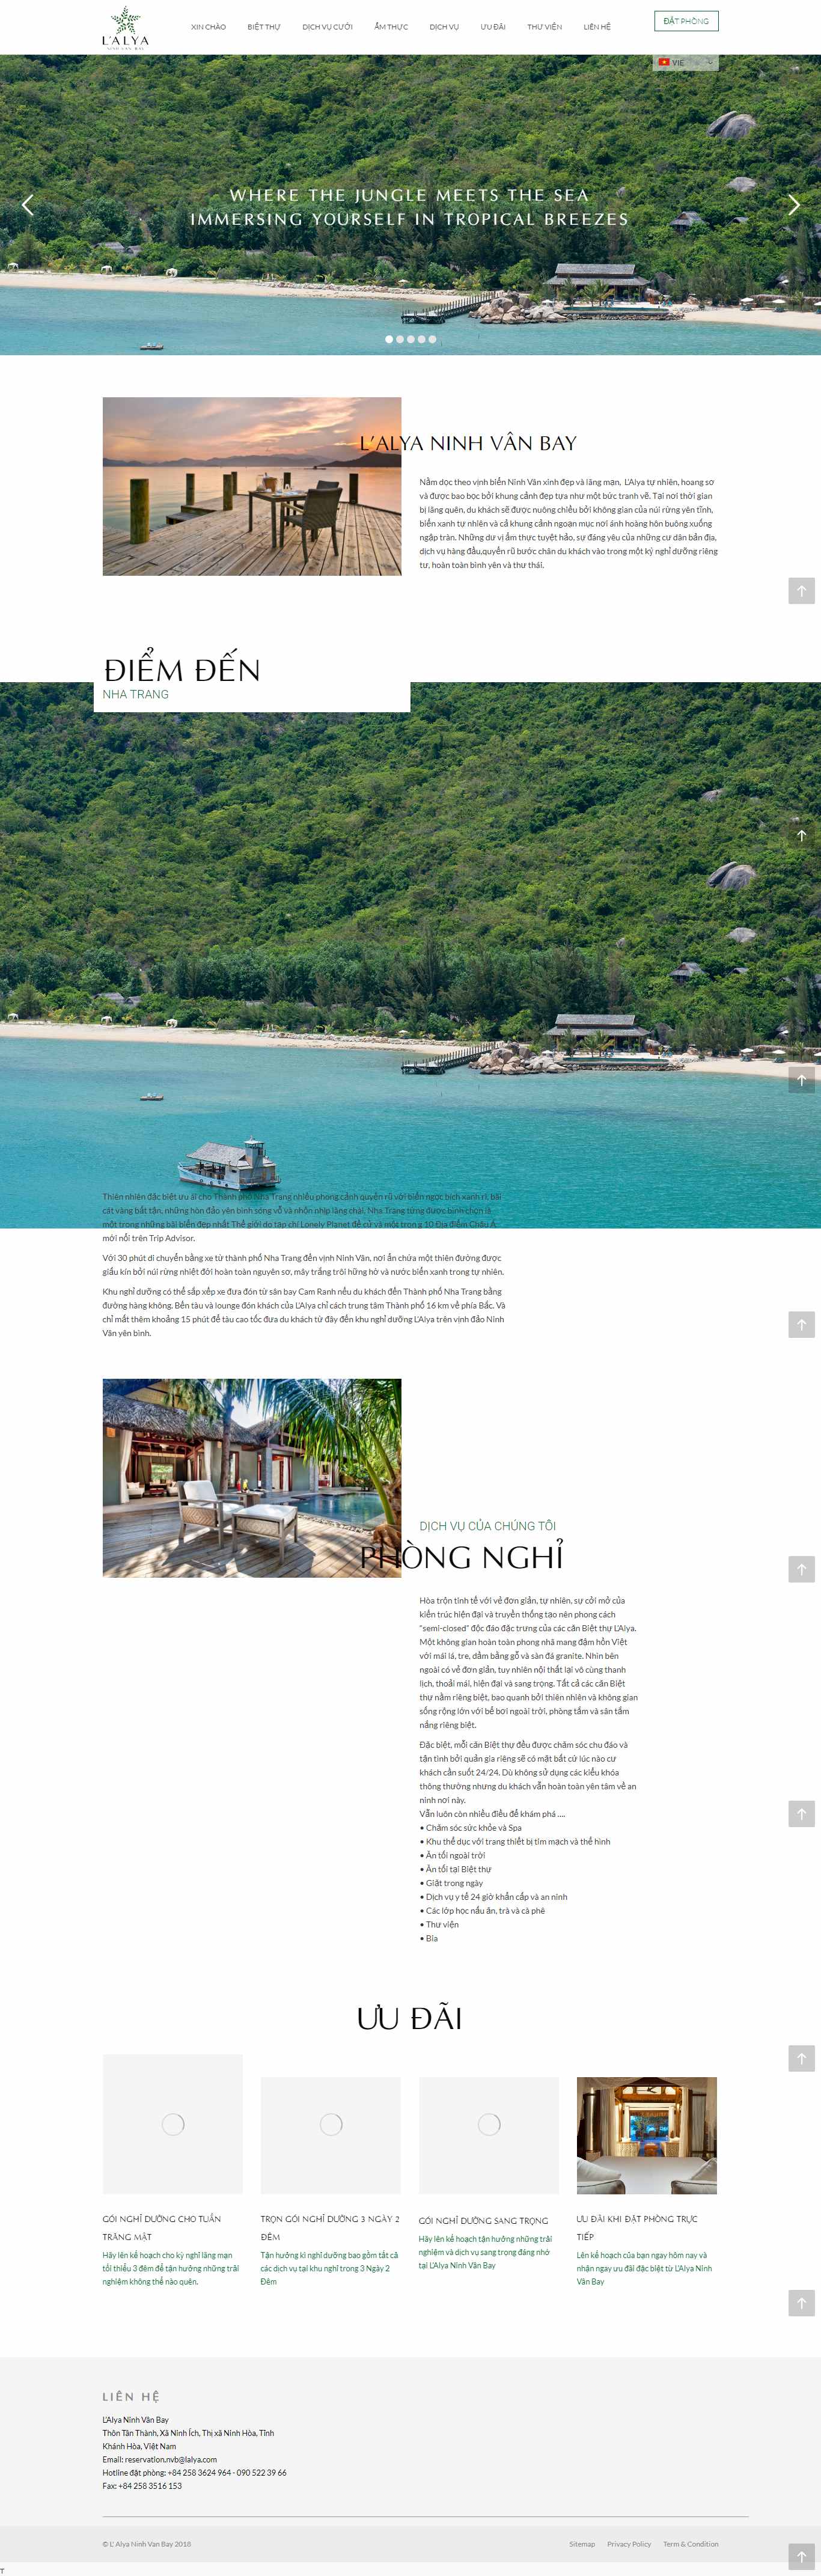 Thiết kế Website resort - khu nghỉ dưỡng - lalyana.com